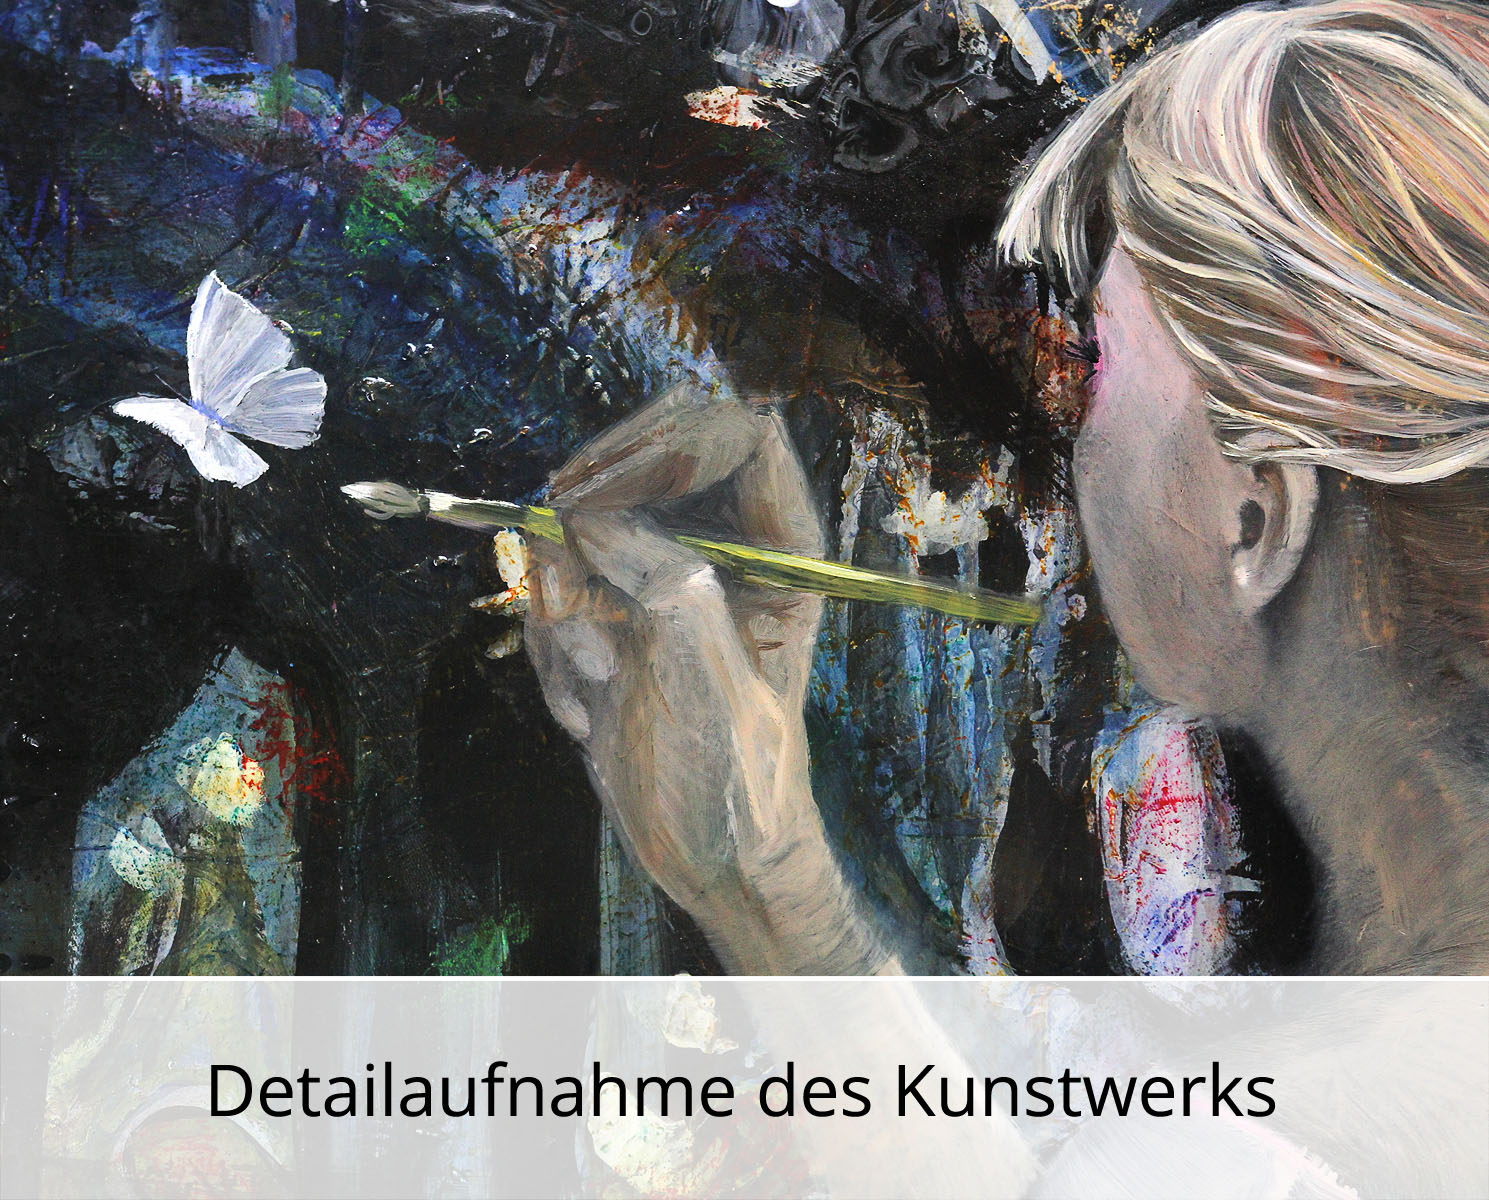 D. Block: "Flieg weisser Schmetterling", Original/Unikat, zeitgenössische Acrylmalerei